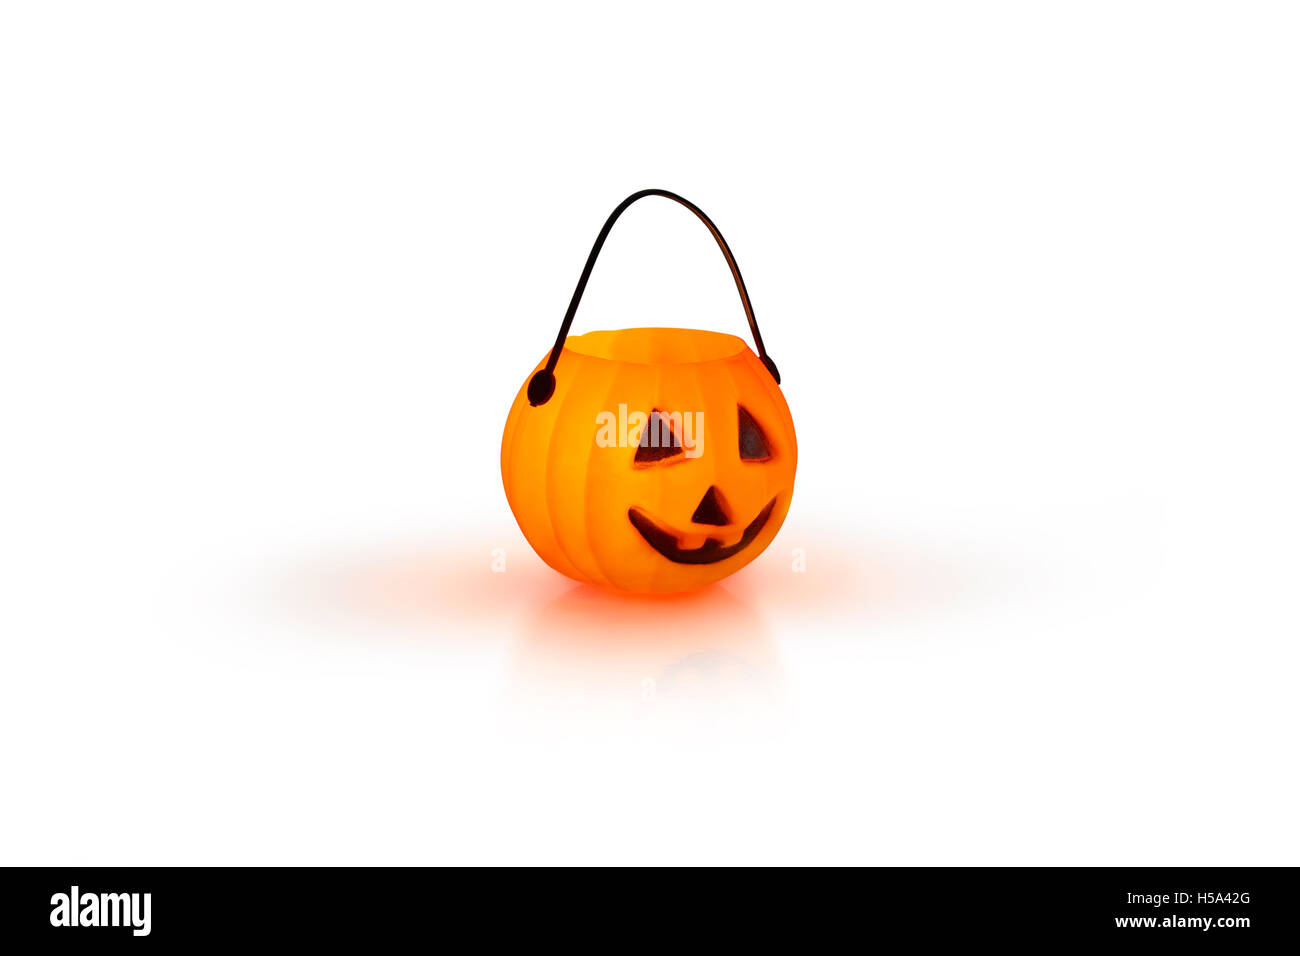 Halloween-Konzept mit einem orange glühenden Kürbis Form Teelicht Kerzenhalter auf weißem Hintergrund Stockfoto